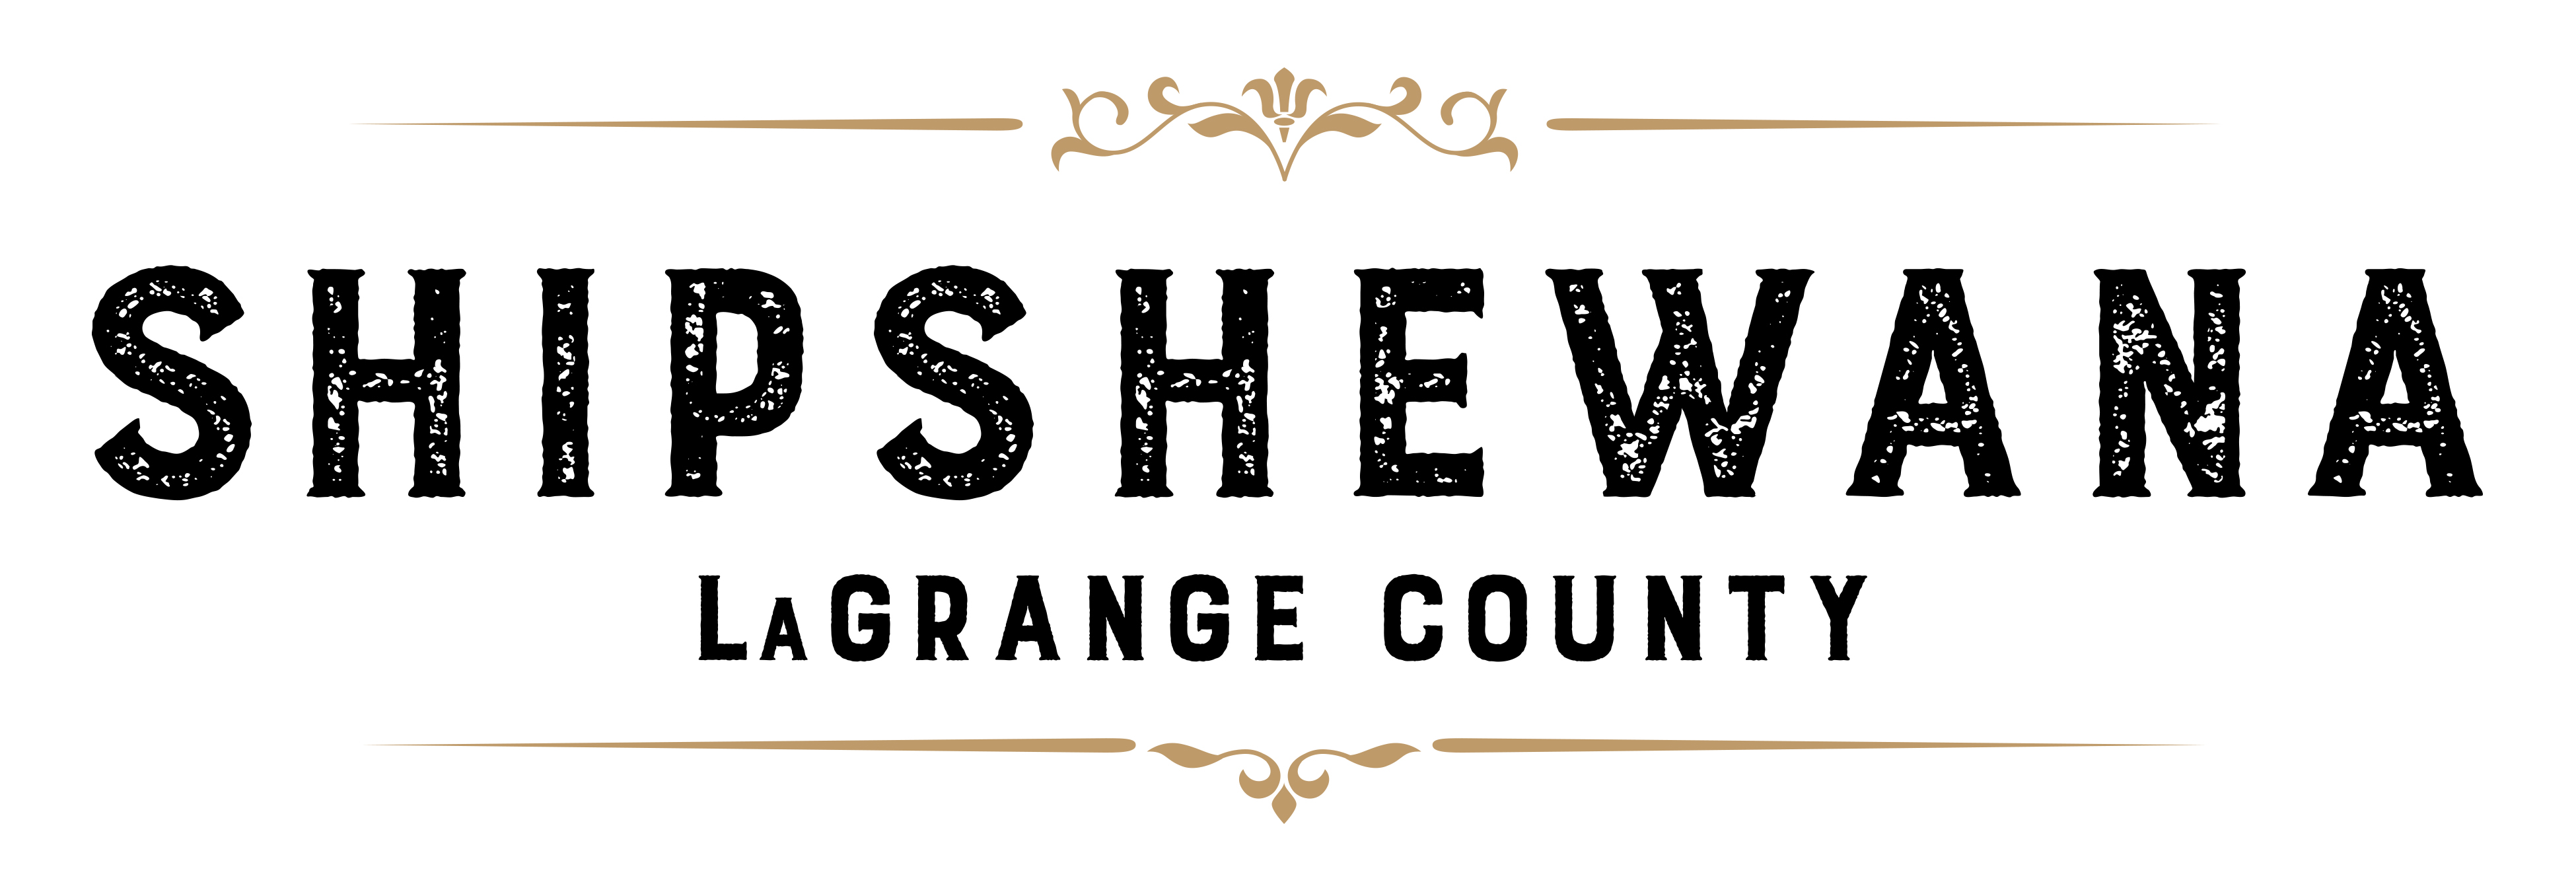 Shipshewana - LaGrange County